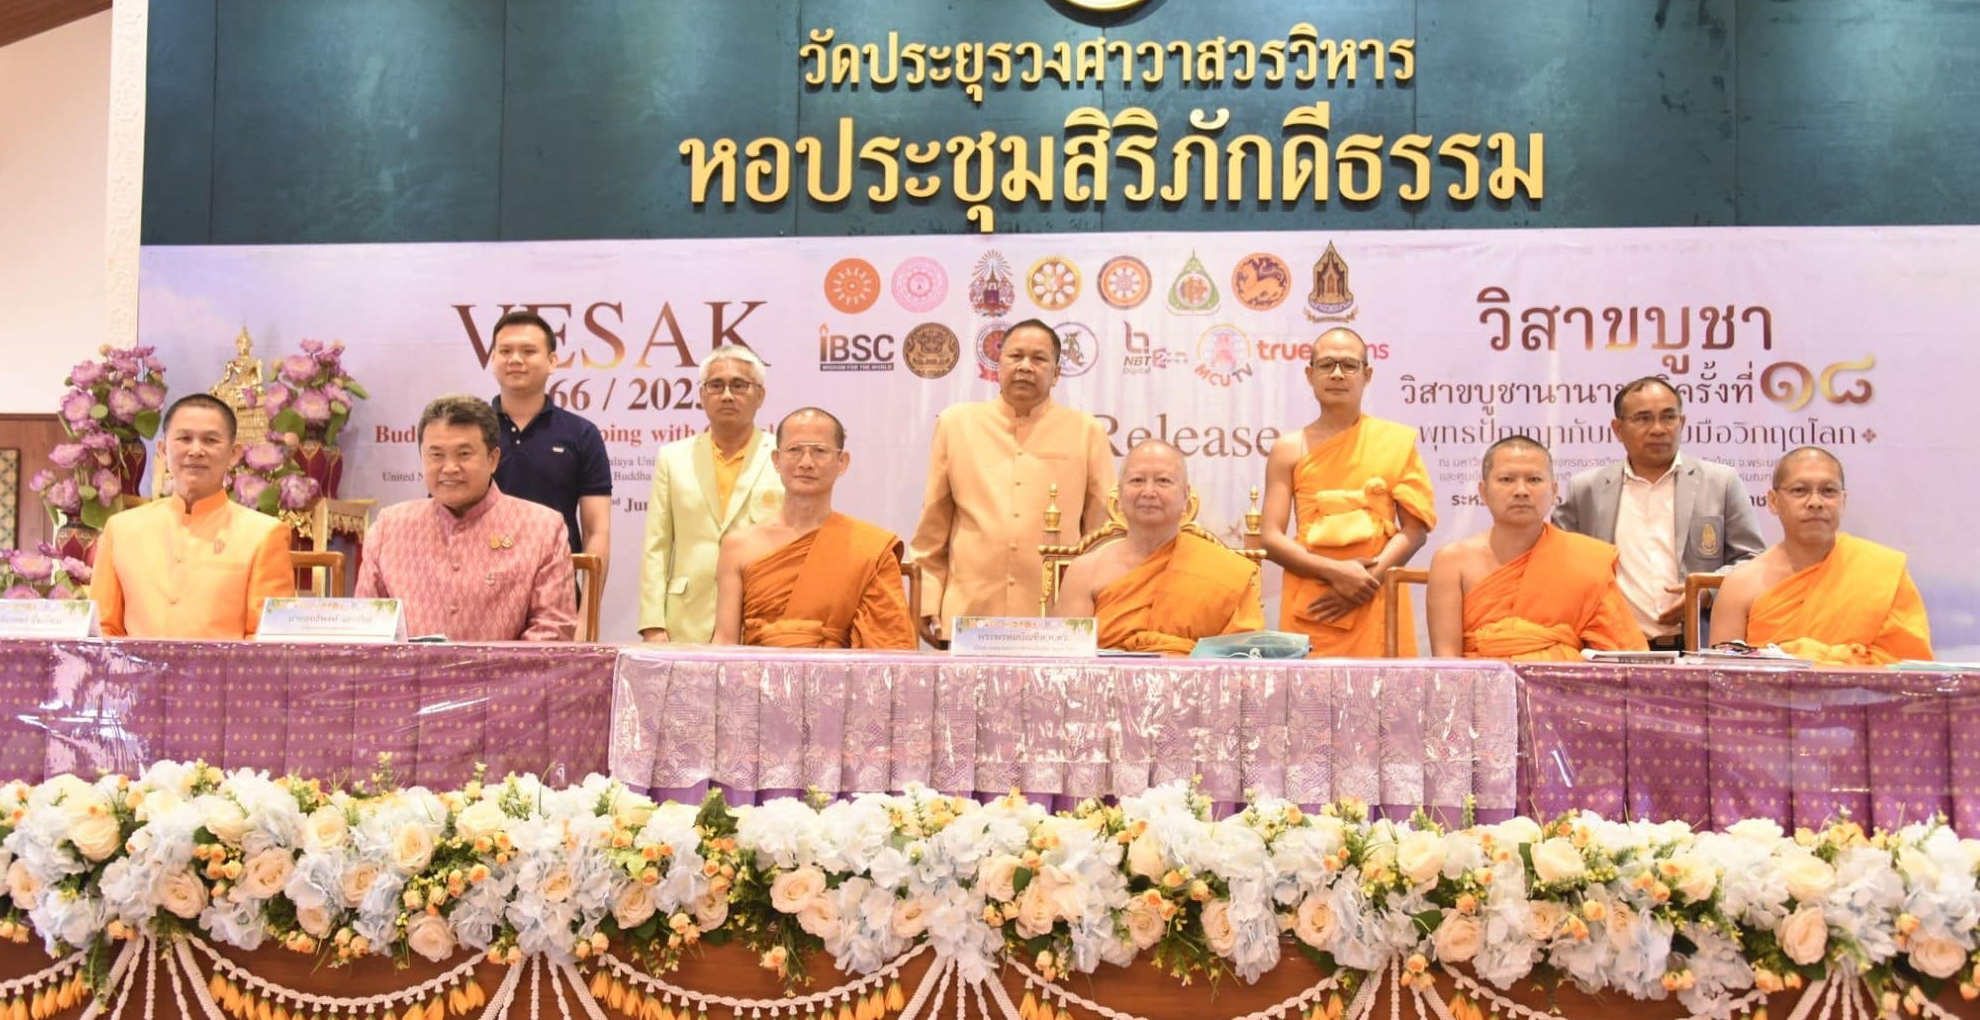 ประเทศไทยพร้อมเป็น “เจ้าภาพจัดงานวิสาขบูชาโลก” นานาชาติตอบรับร่วม 50 ประเทศ นำโดย “นายกรัฐมนตรีศรีลังกา”